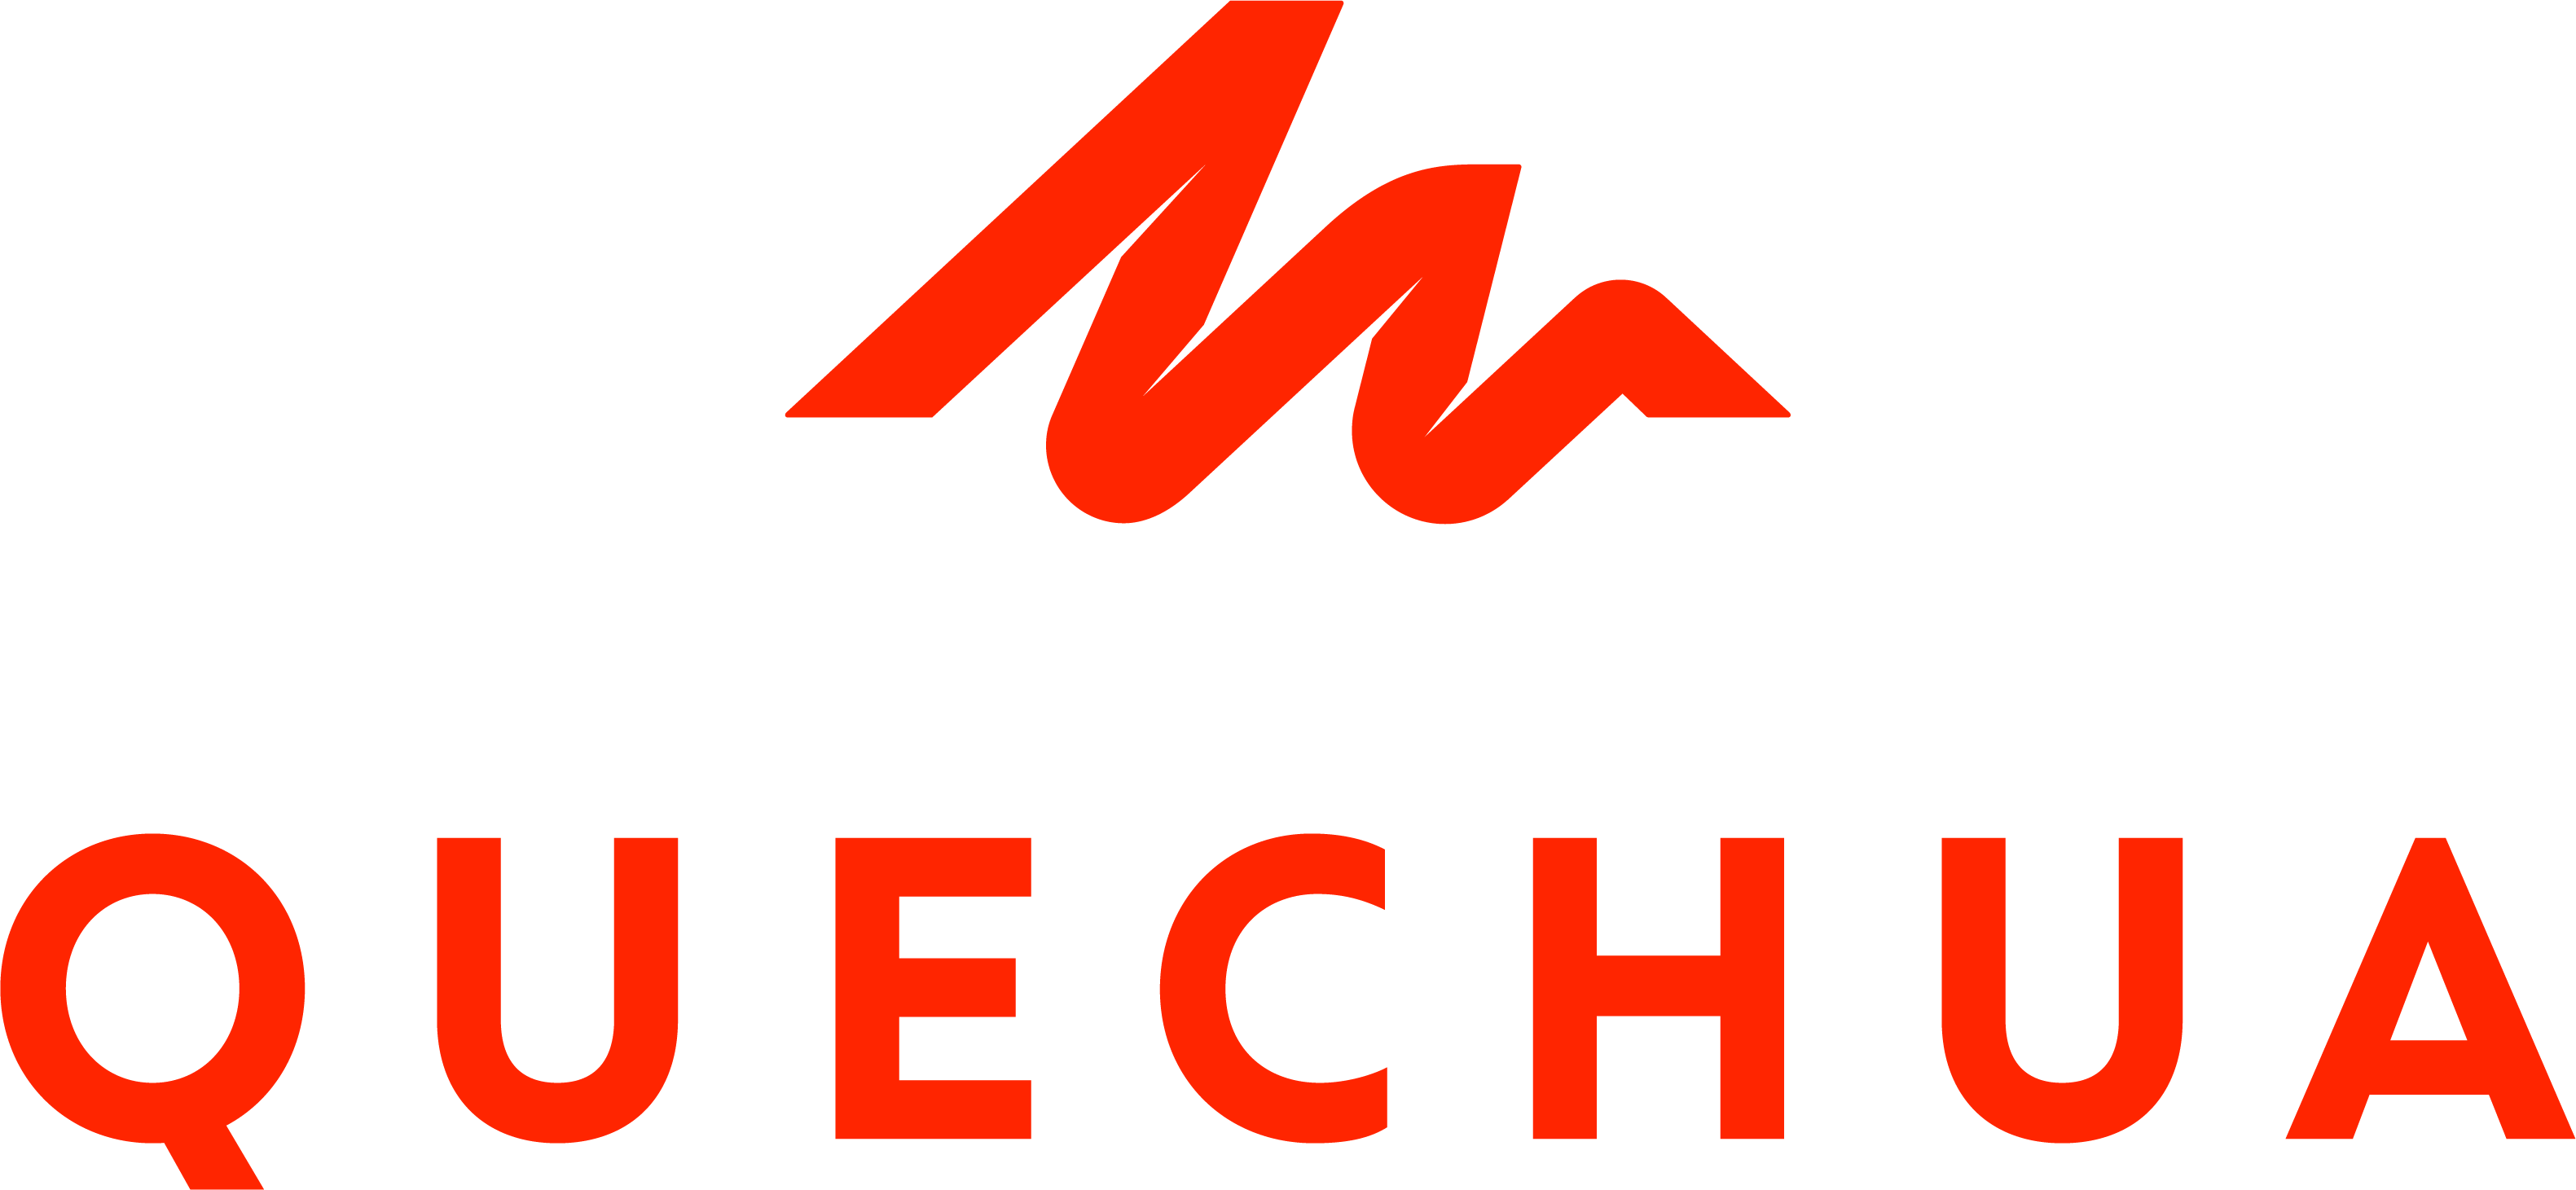 file quechua company logo wikimedia commons 32522